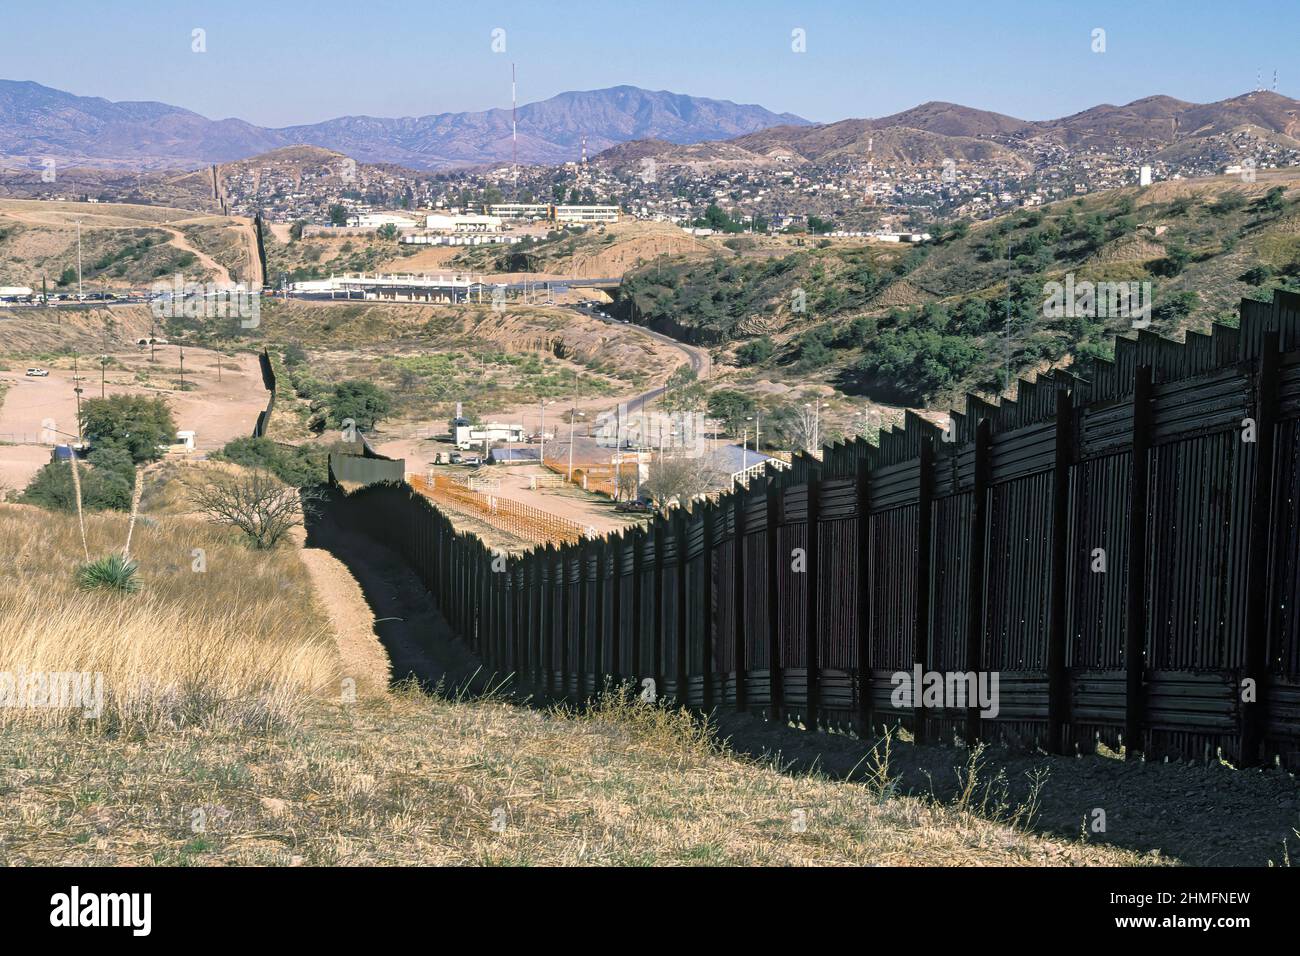 Grenzzaun zwischen Arizona und Sonora Mexiko, Nogales, Arizona Stockfoto